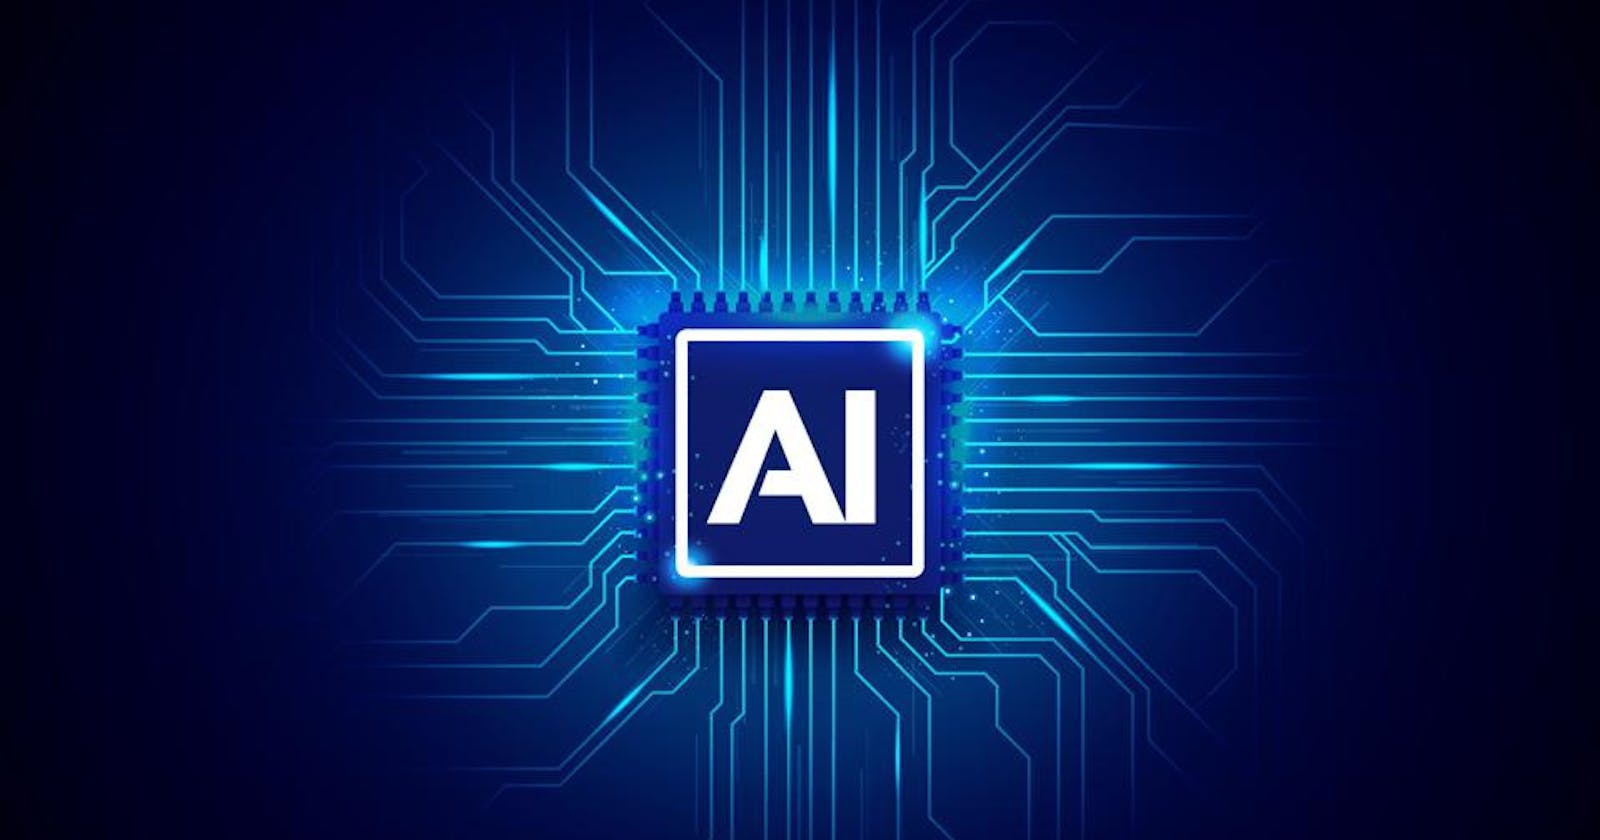 AI and it's Future